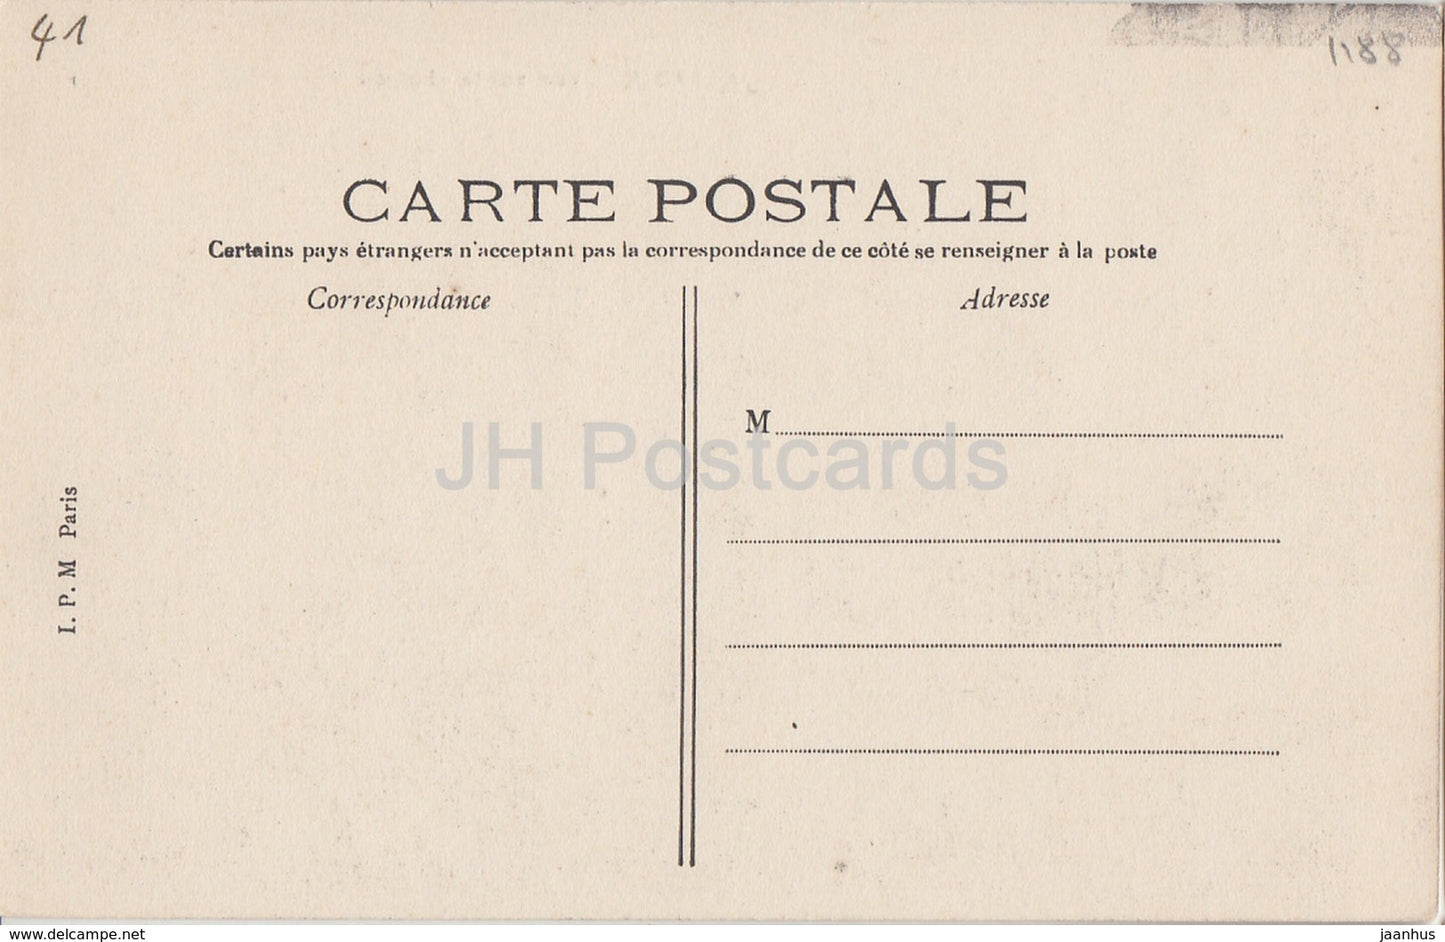 Lavardin - Vue sur le Chateau - castle ruins - old postcard - France - unused